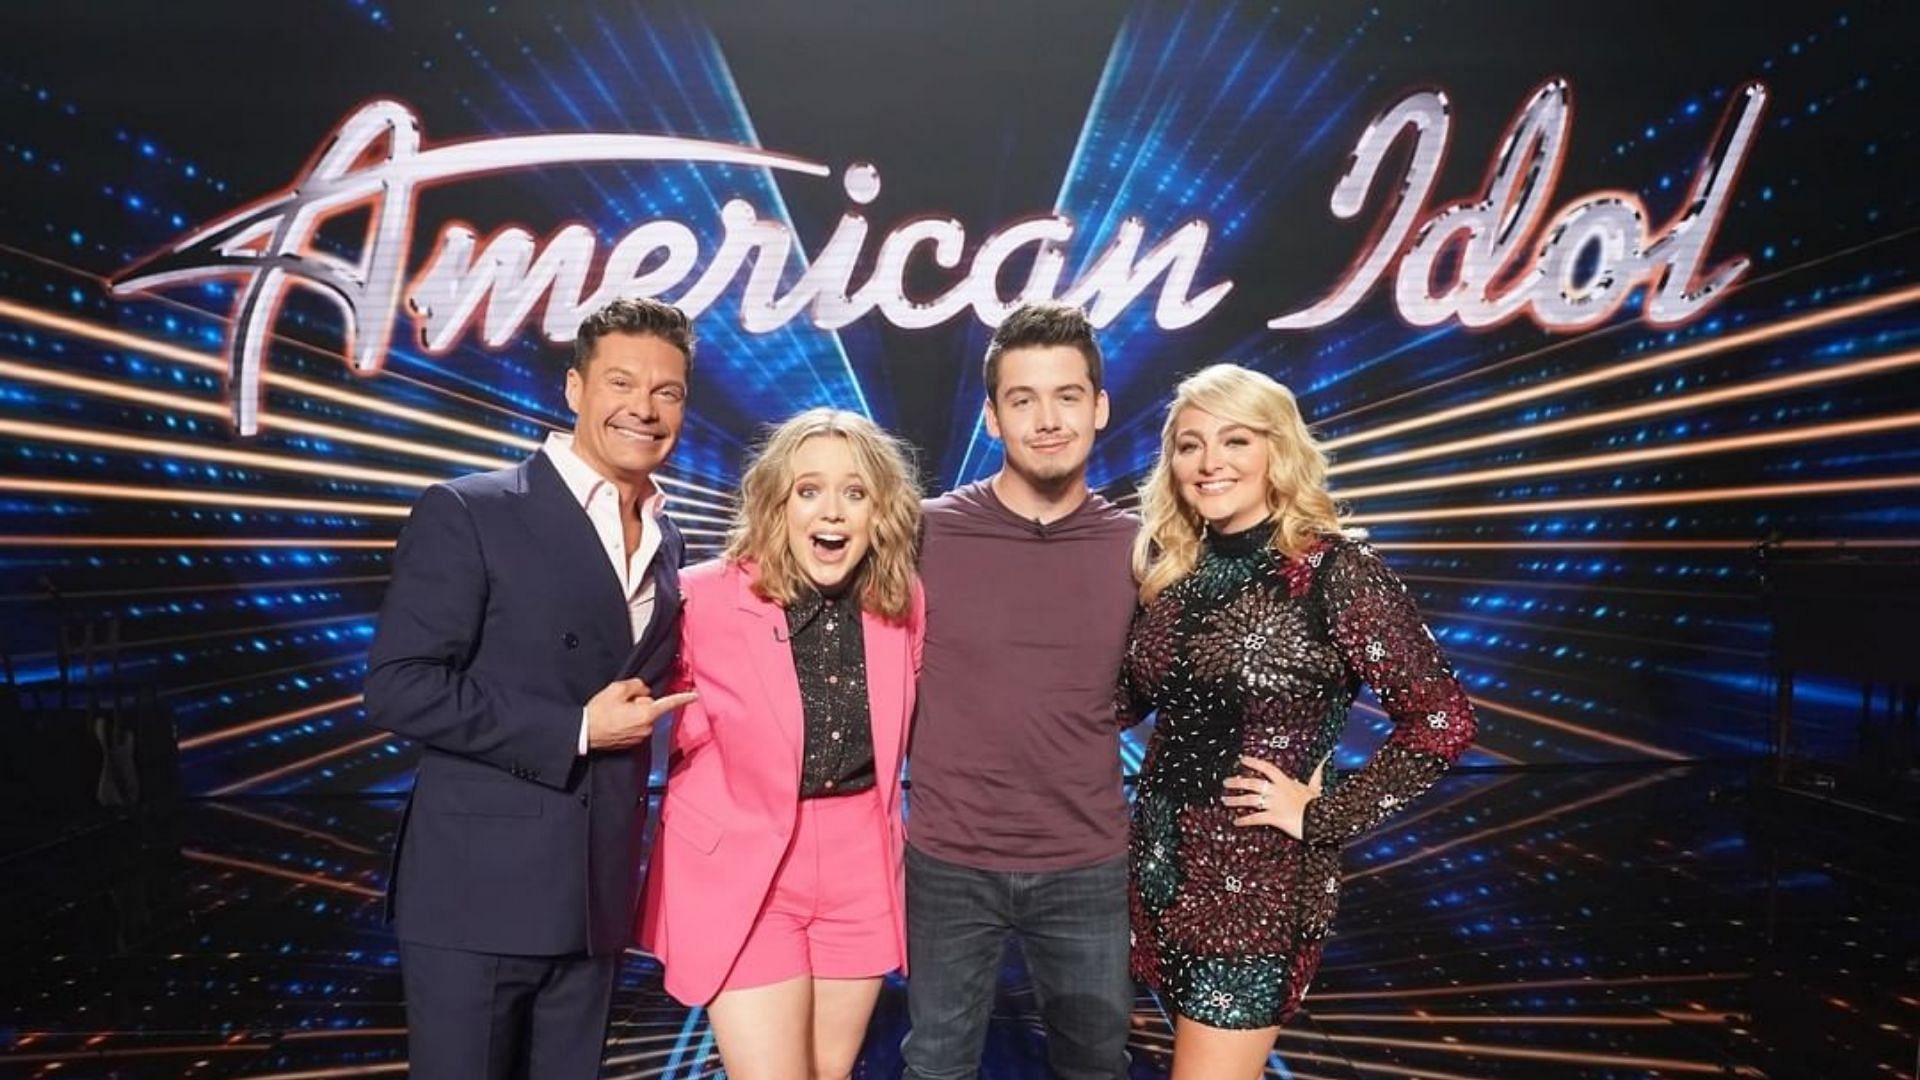 Grand finale of American Idol Season 20 breaths of air on May 22 (Image via americanidol/Instagram)